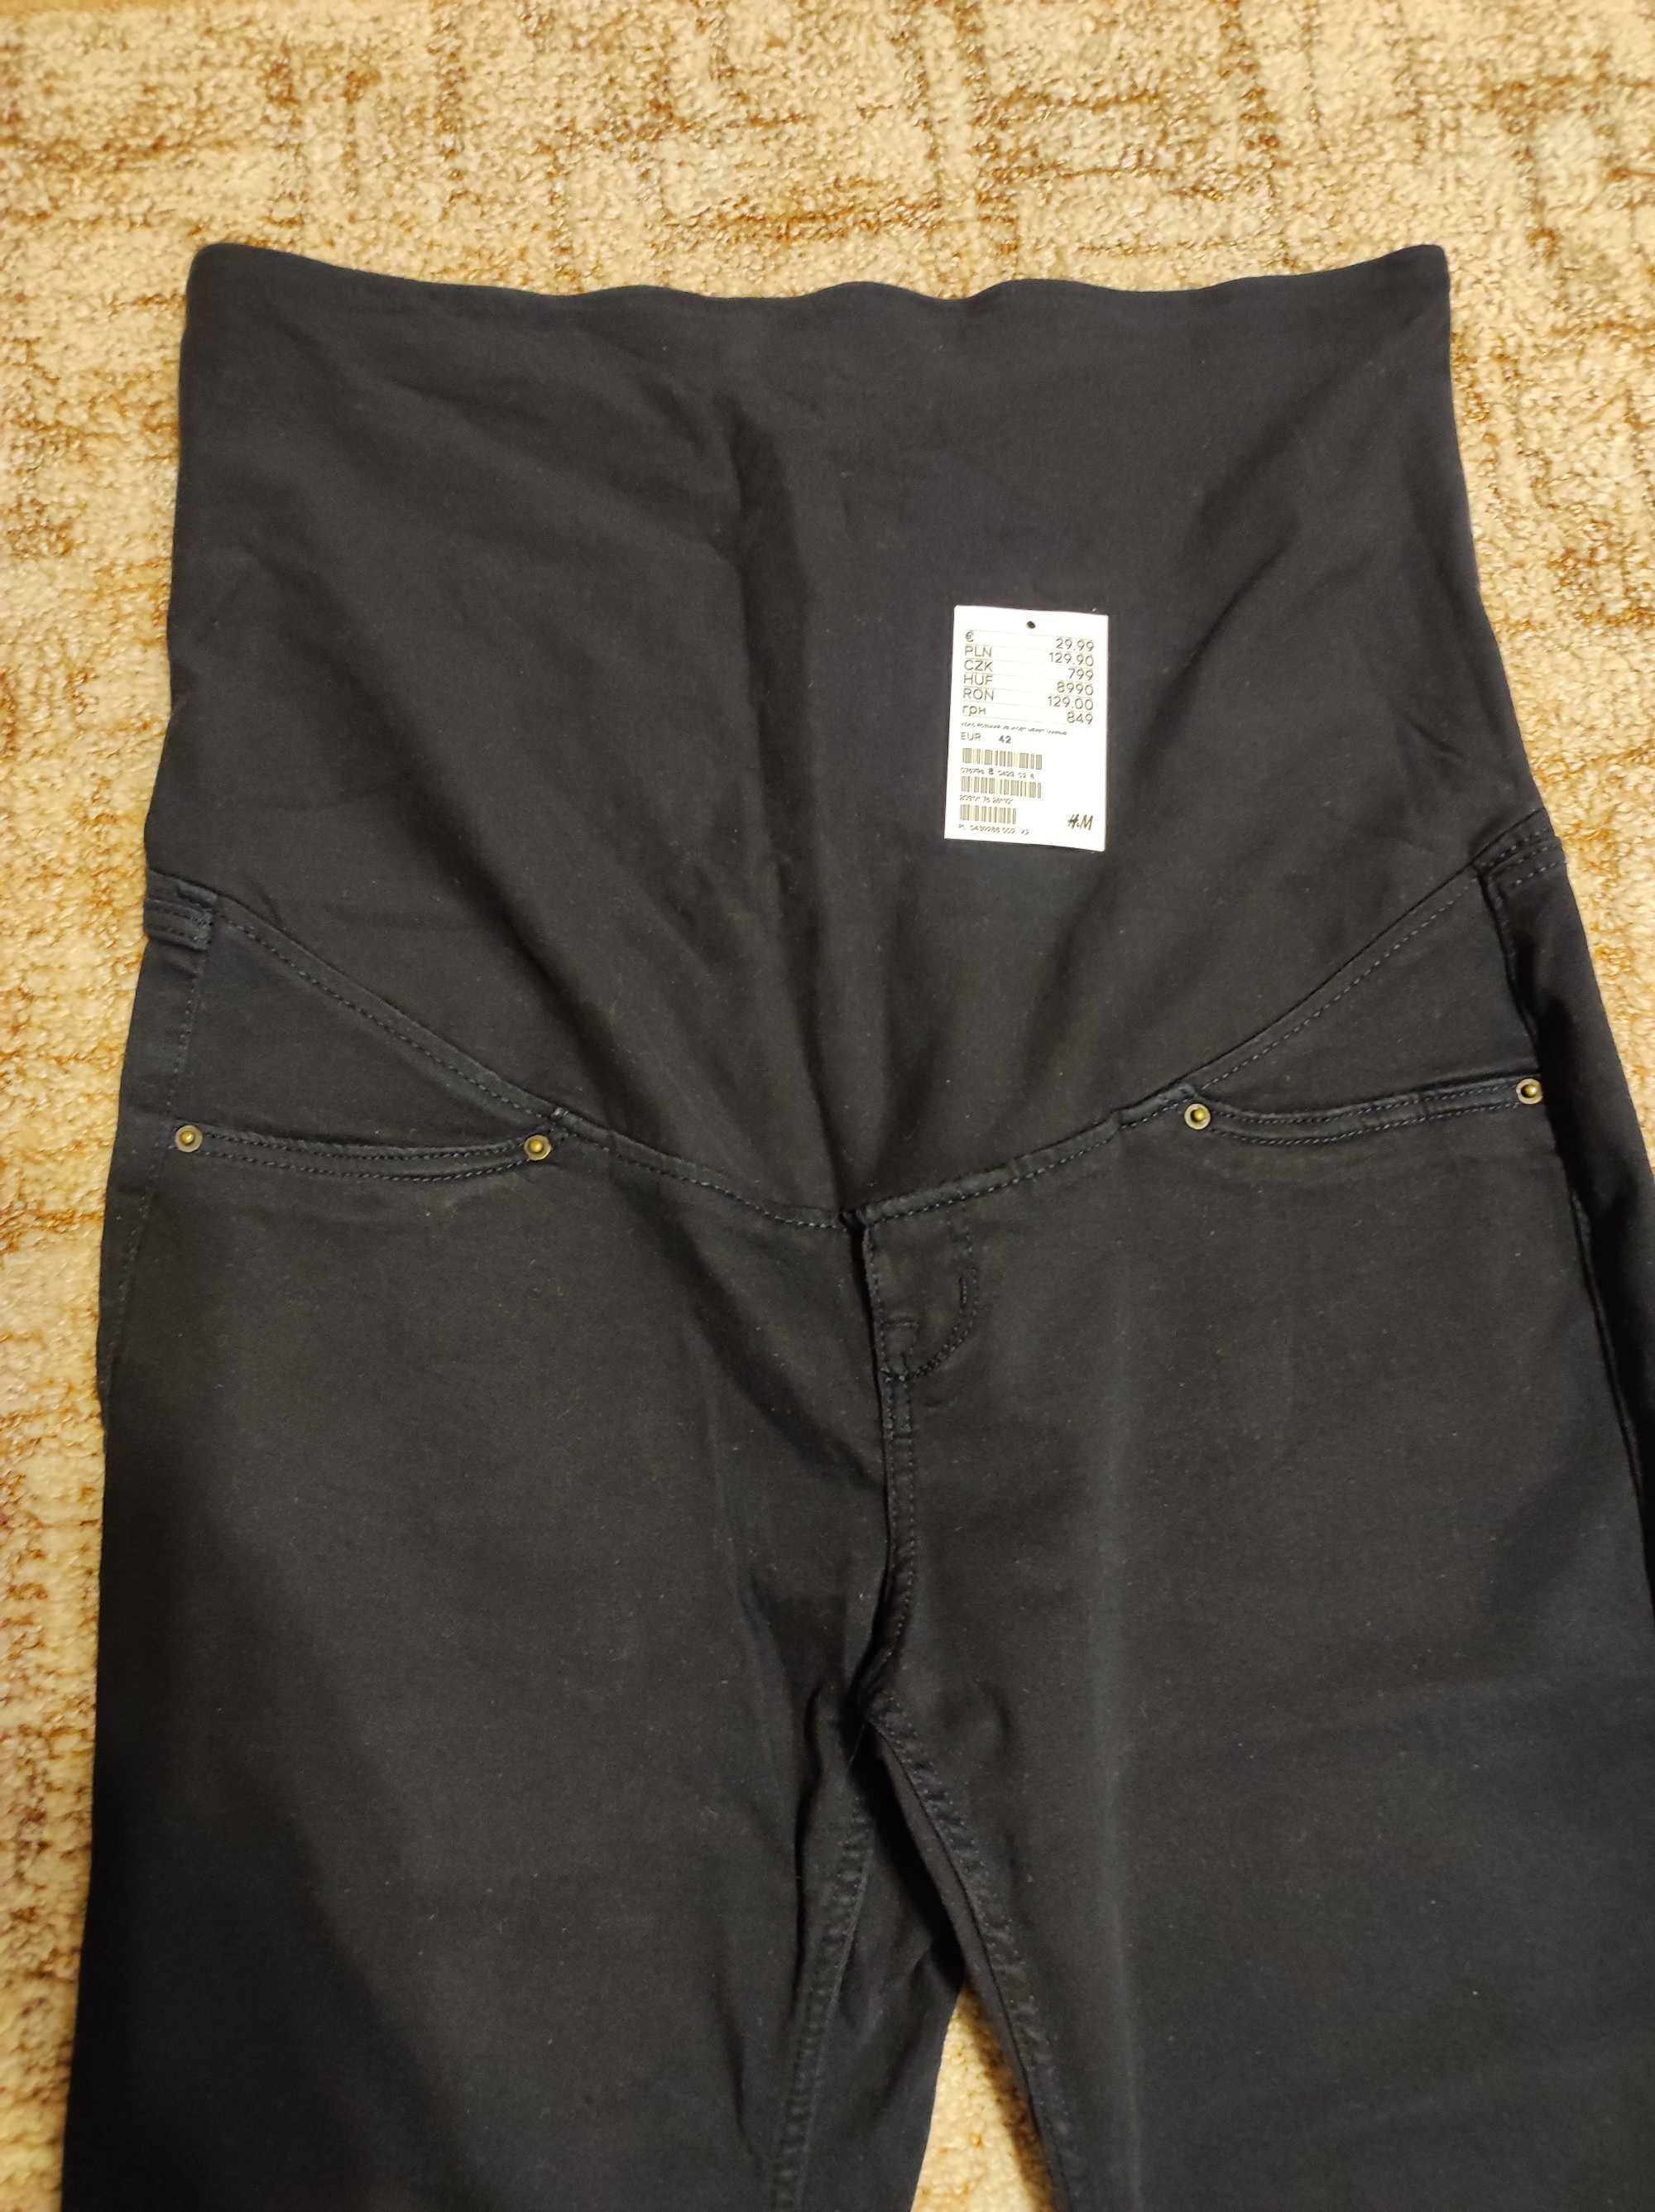 Spodnie ciążowe jeans czarne HM rozmiar 40/42/ L